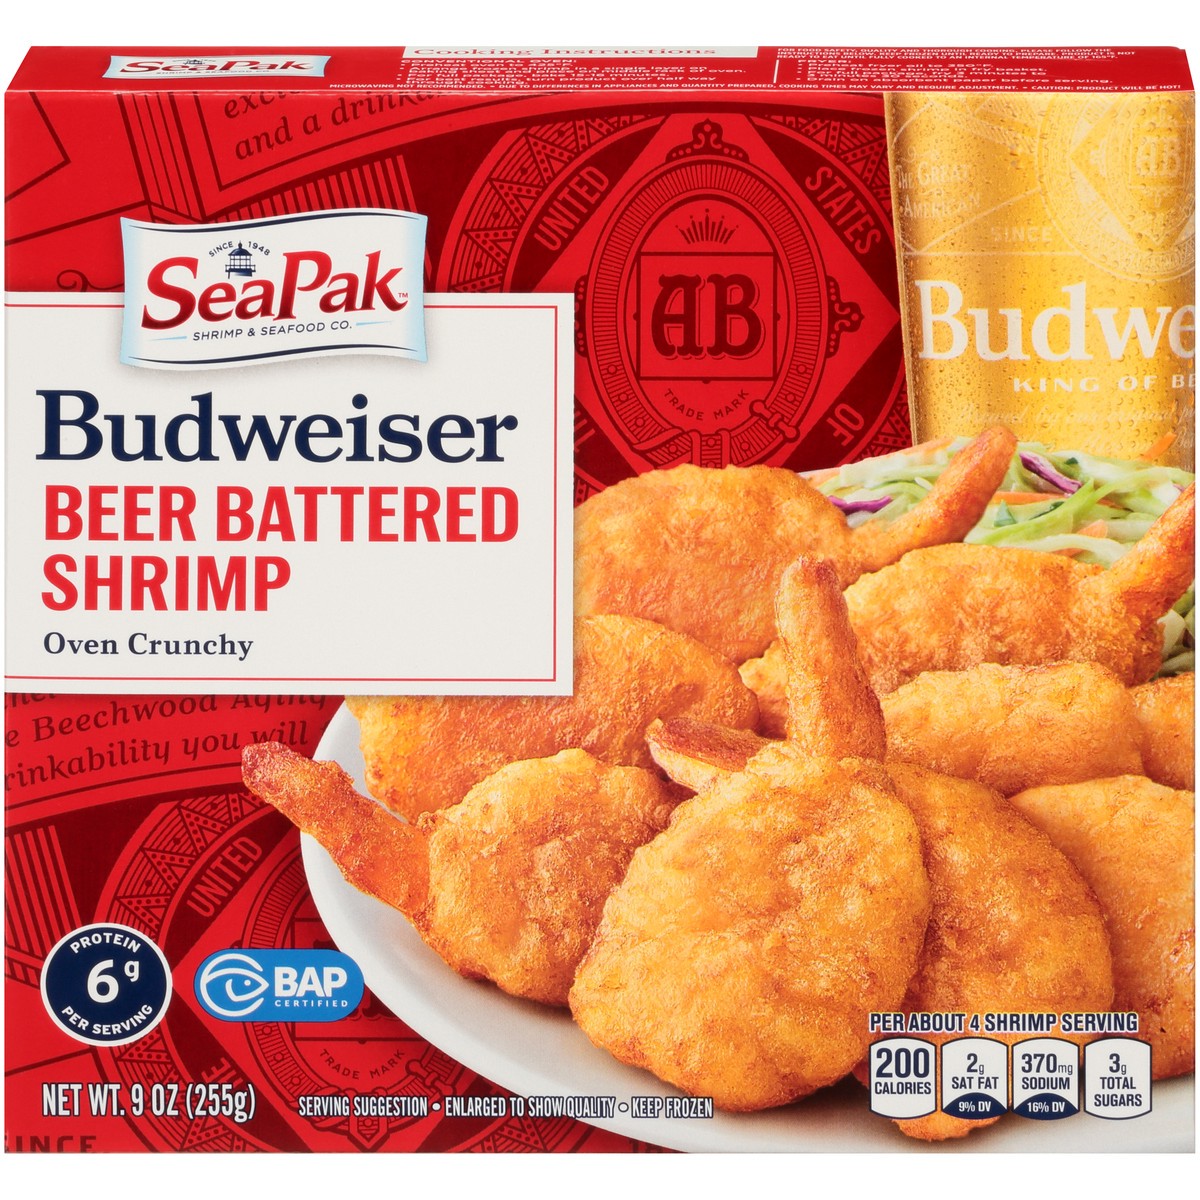 slide 1 of 14, SeaPak Shrimp & Seafood Co. Budweiser Oven Crunchy Beer Battered Shrimp 9 oz. Box, 9 oz